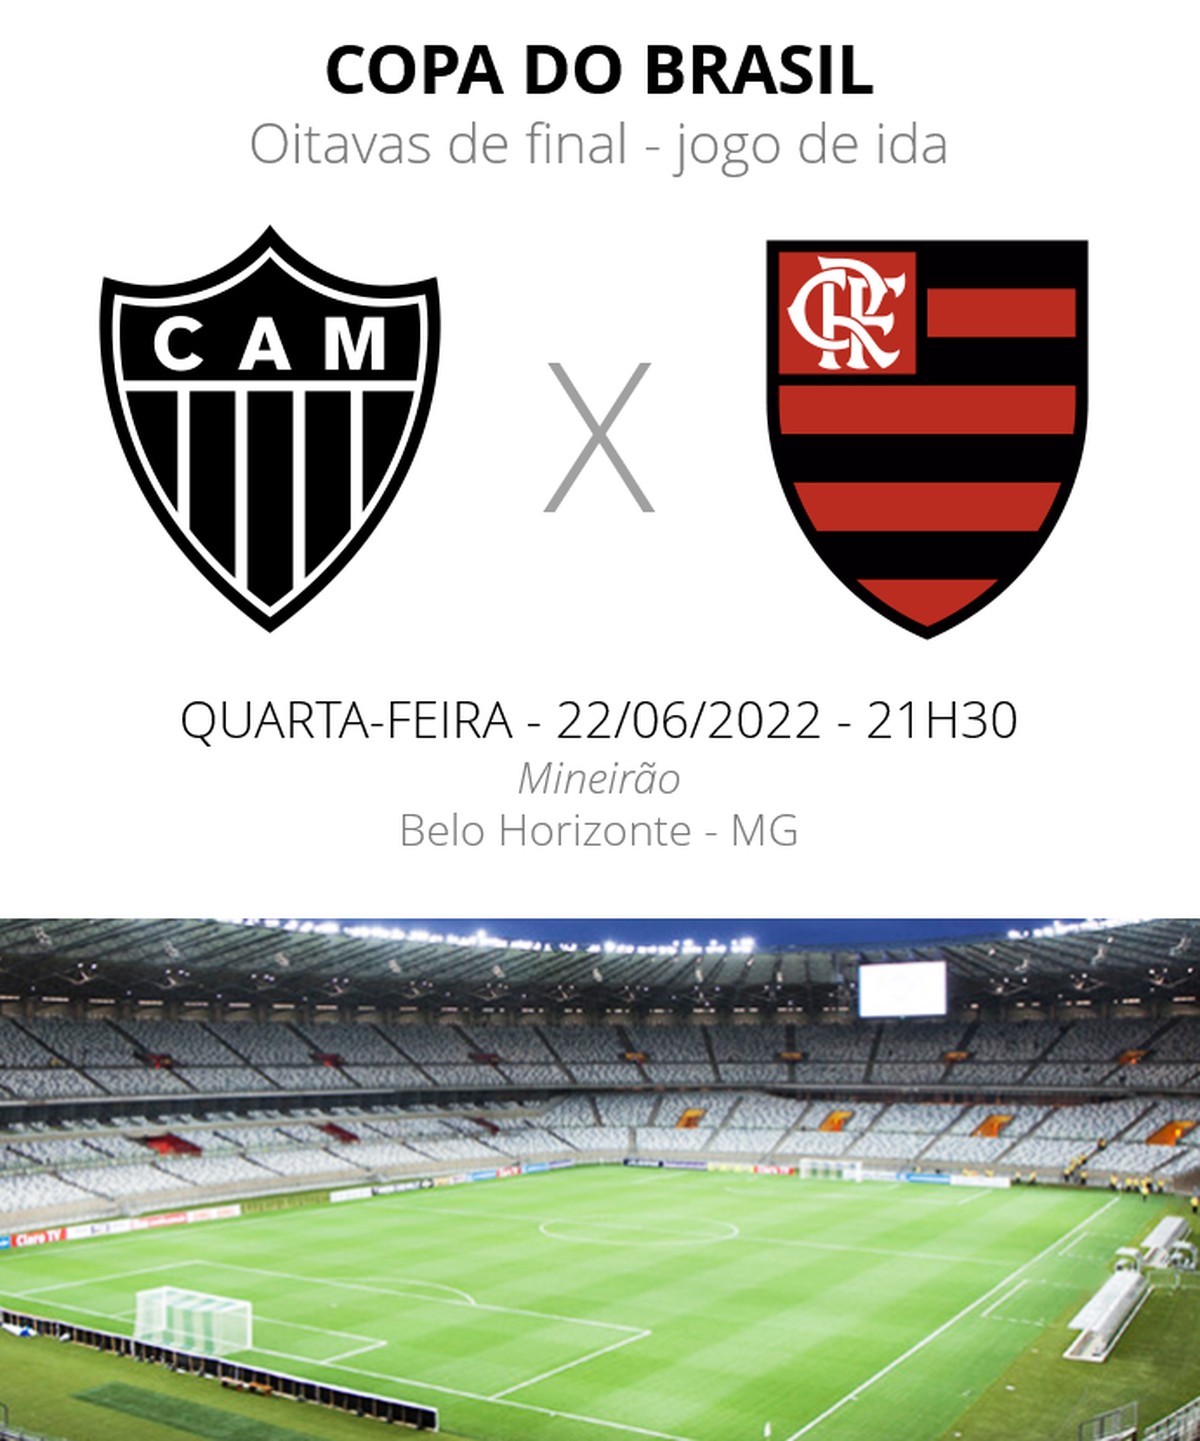 Qual foi o último resultado entre Flamengo e Atlético Mineiro?